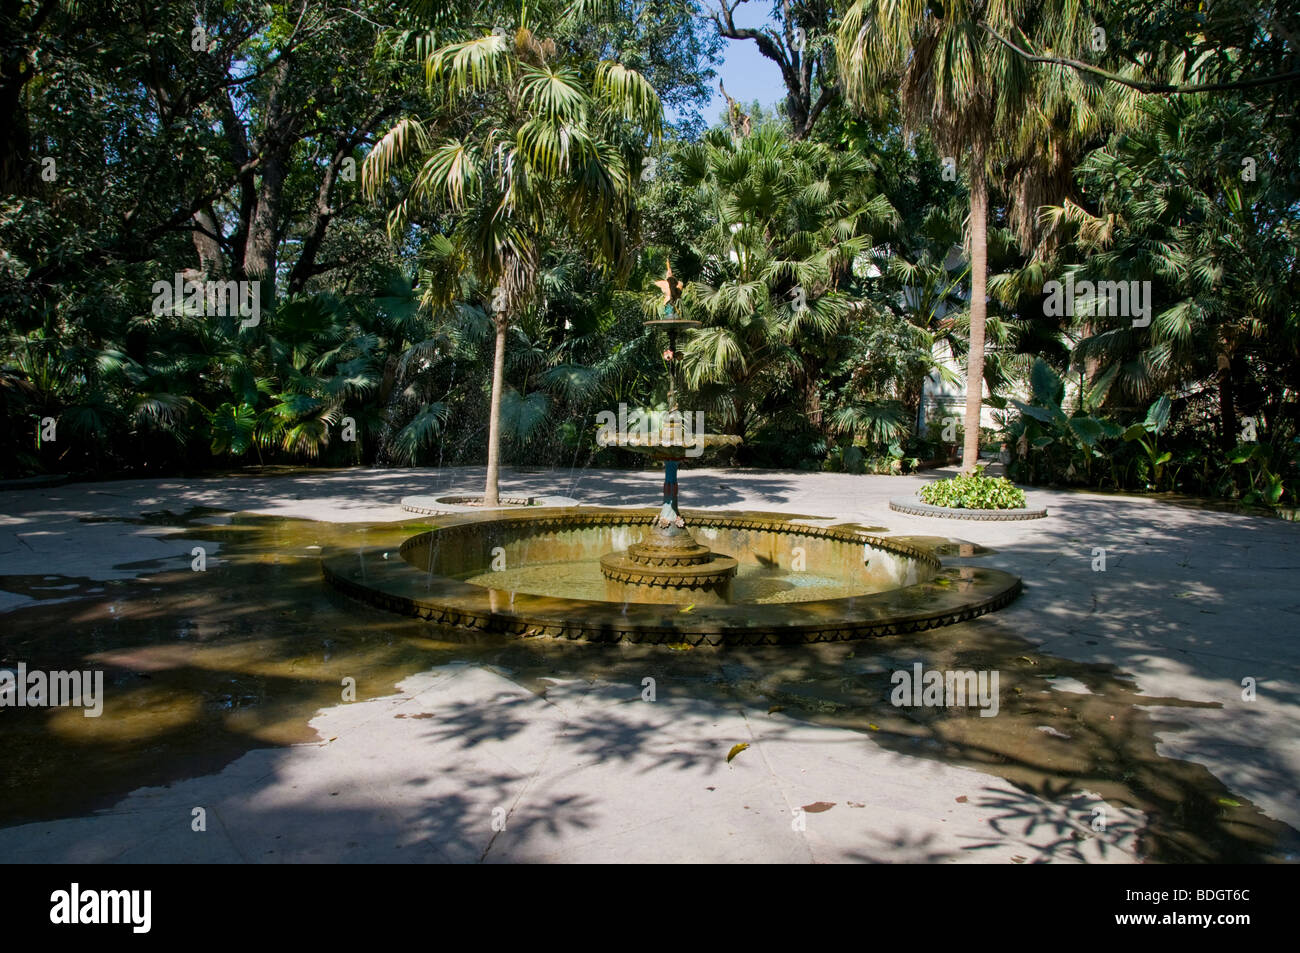 Gärten der Maids Of Honour, kühlen Brunnen schmücken den Park, Sahelion k Bari, Udaipur, Rajasthan, Indien Stockfoto